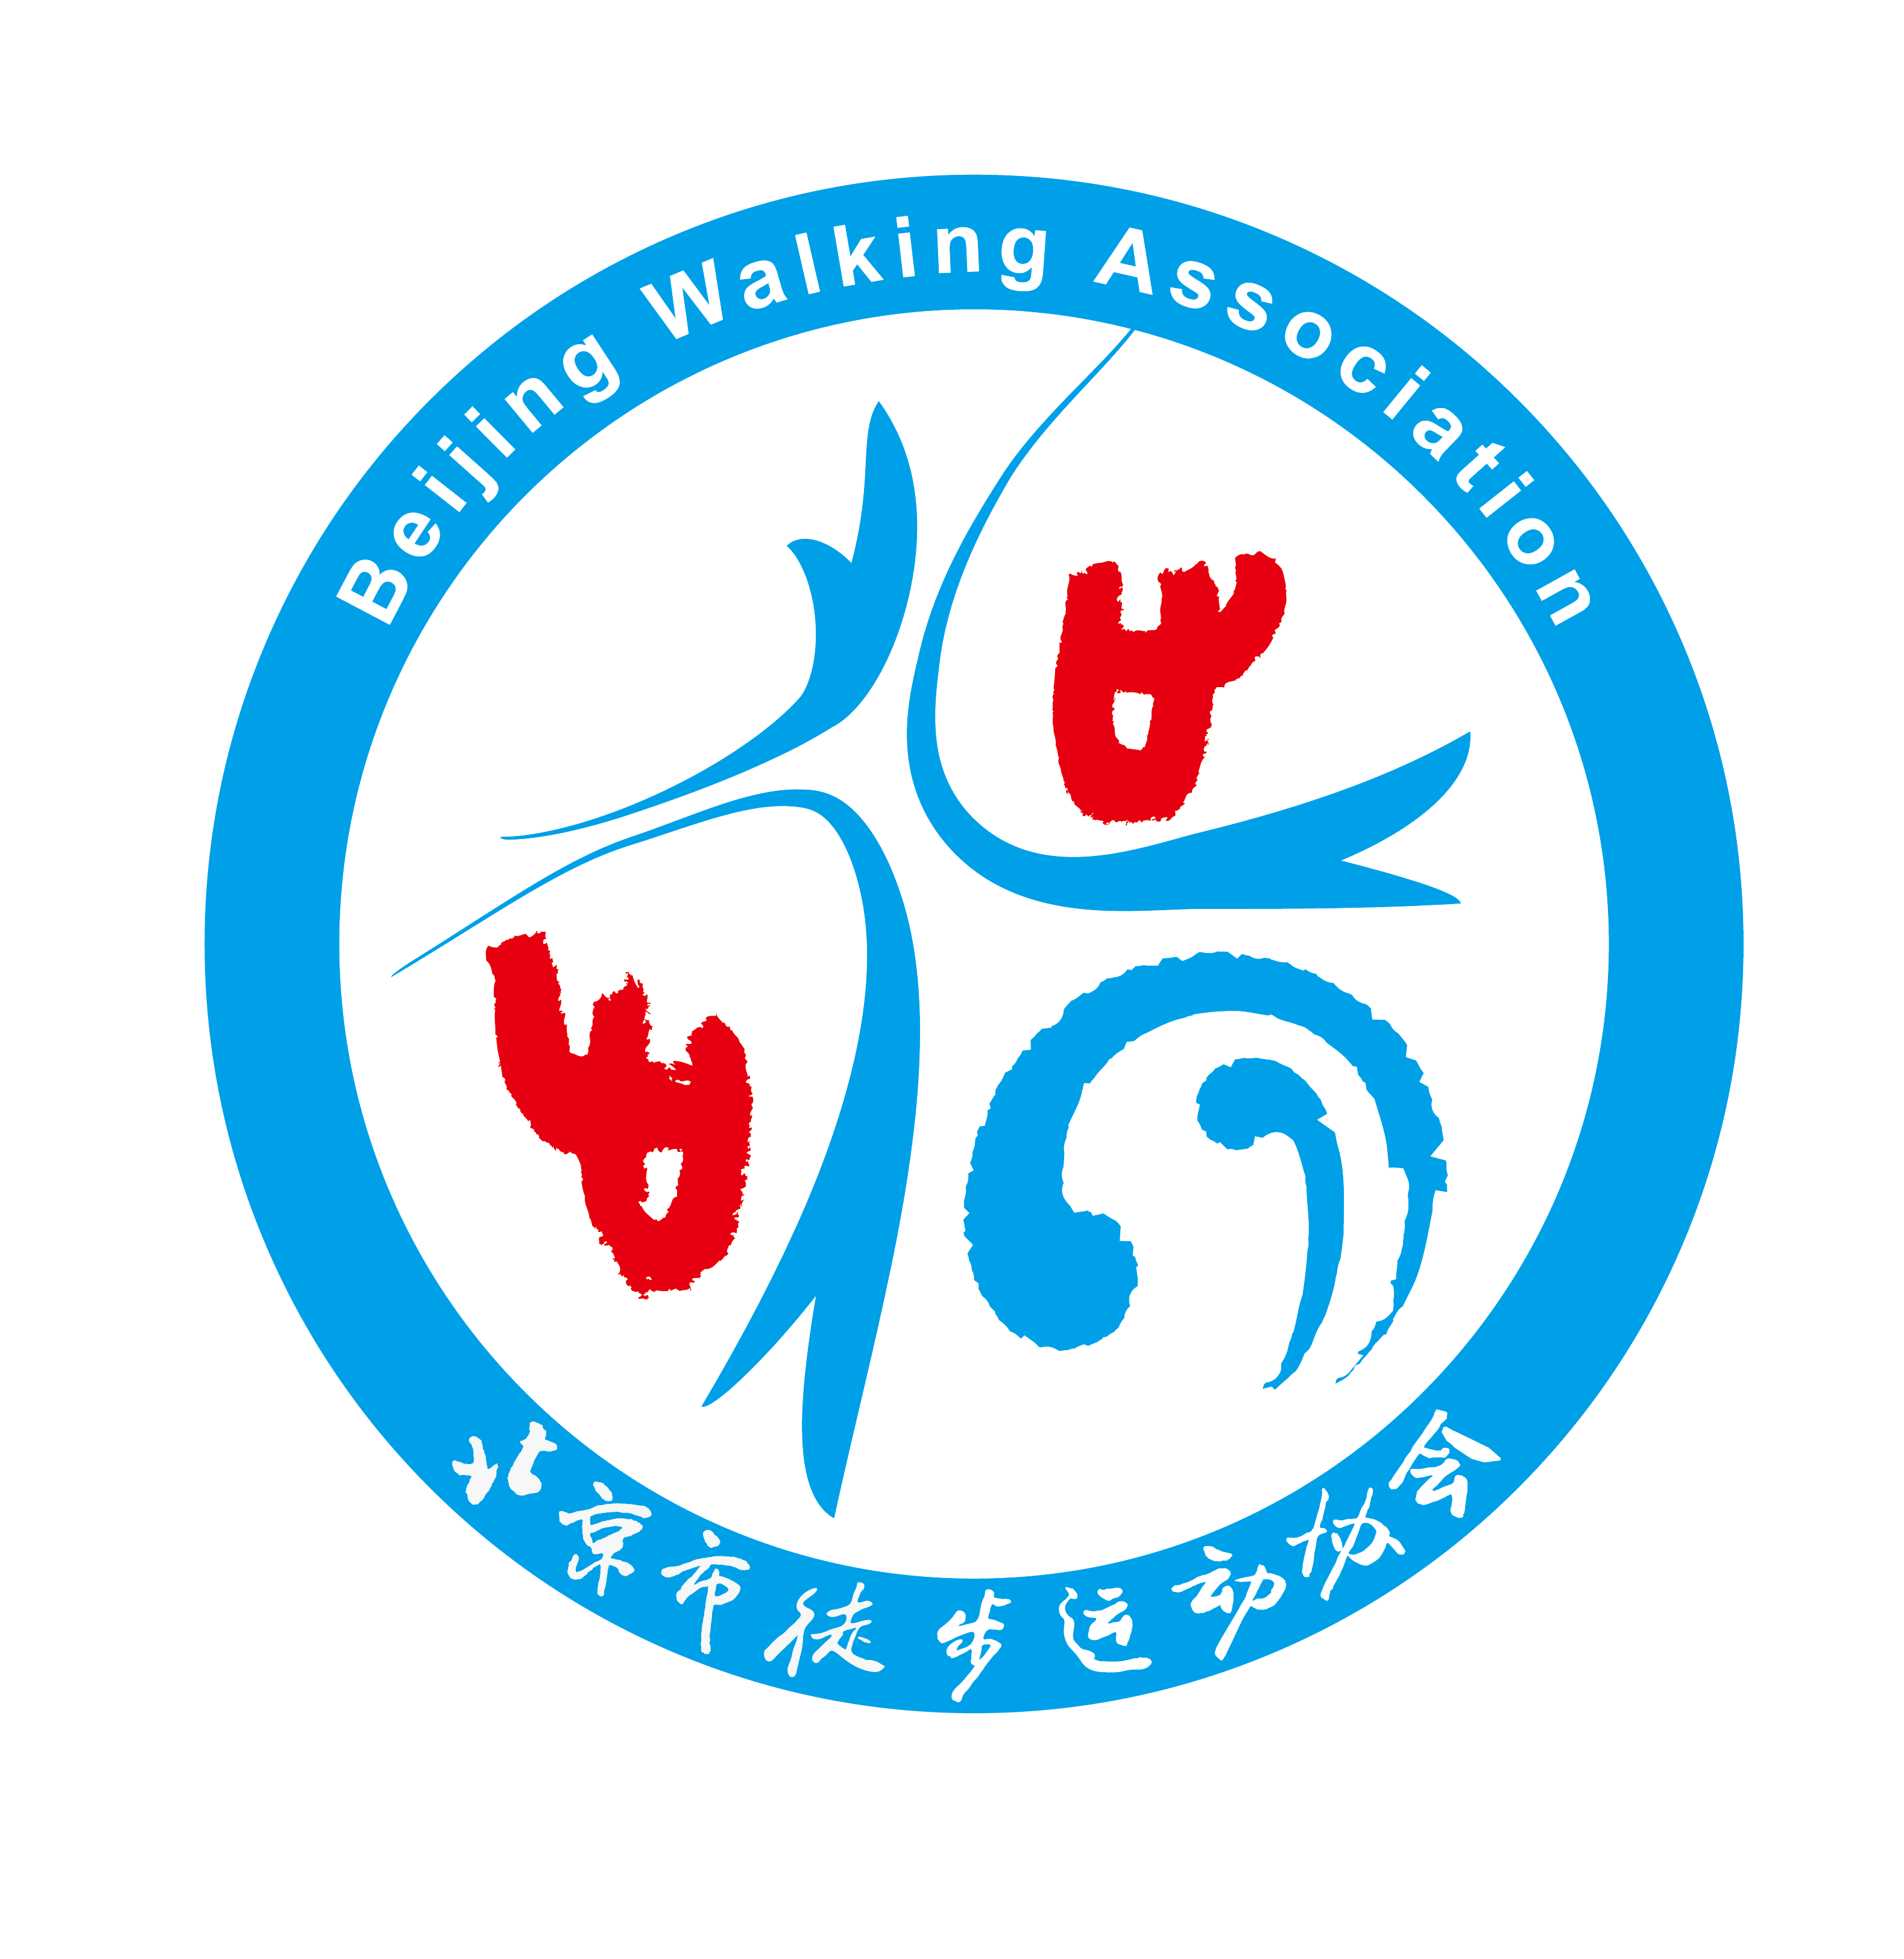 北京市徒步運動協會